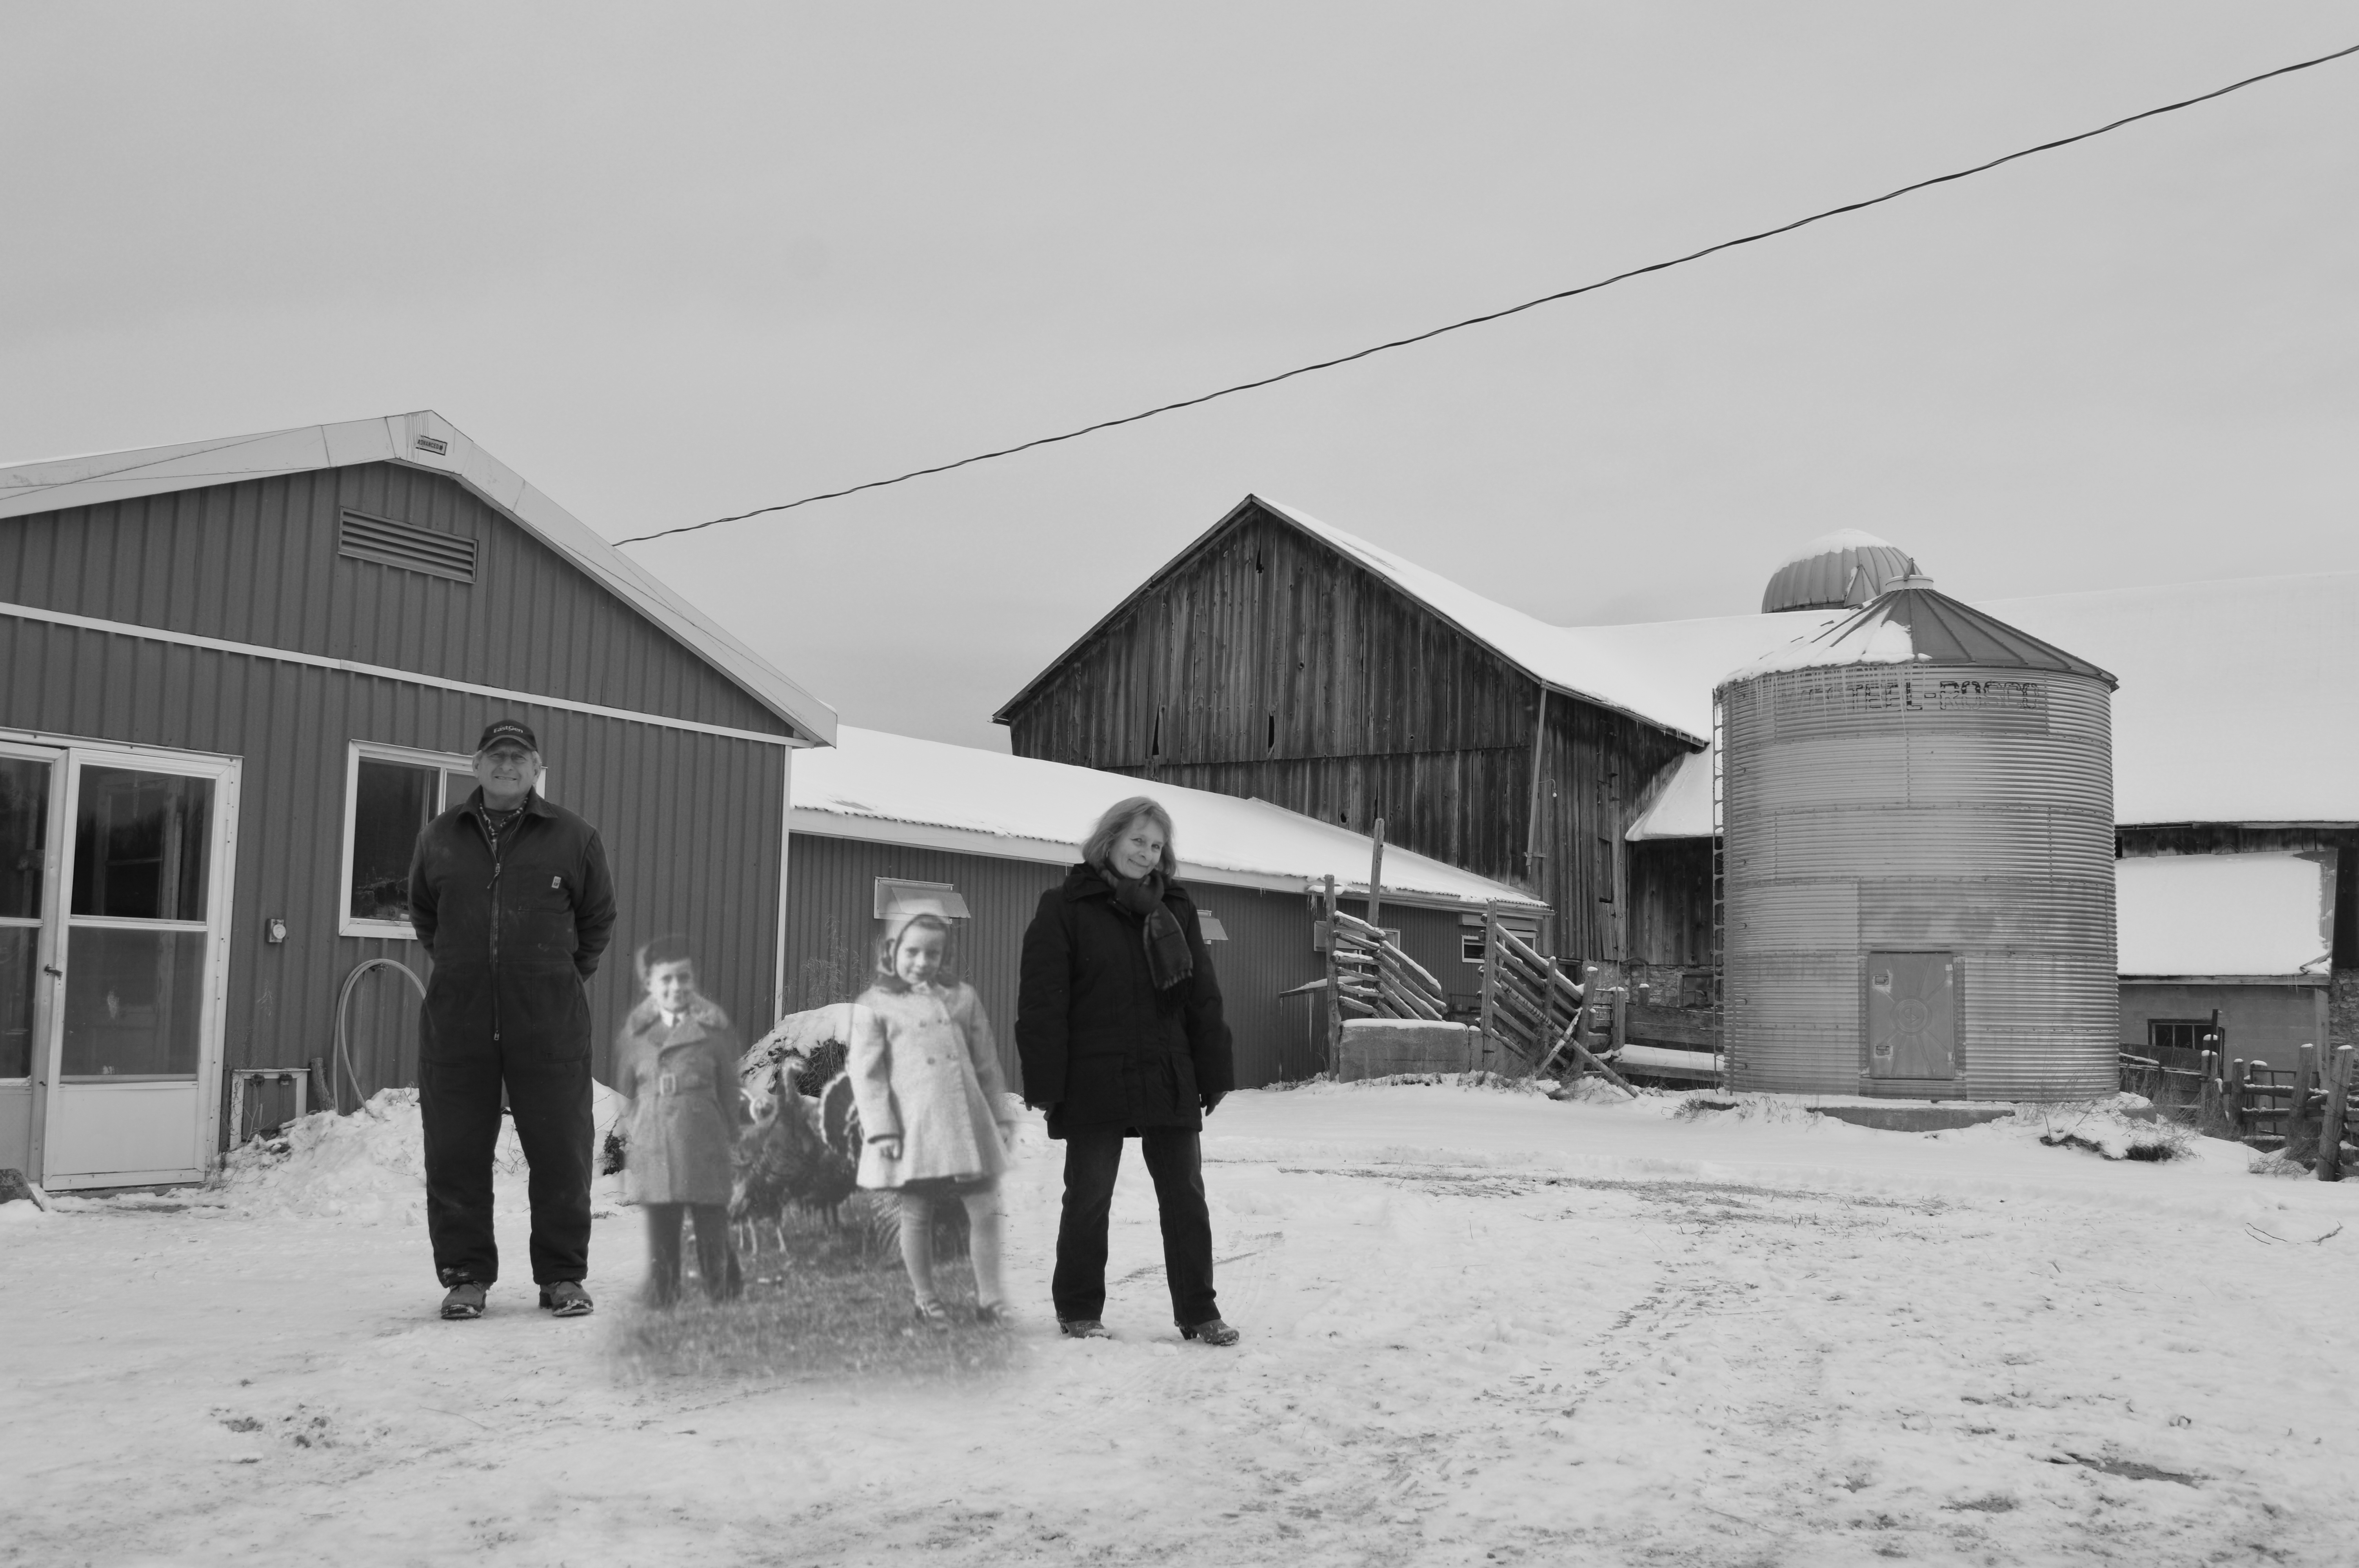 Une photo en noir et blanc de deux enfants et des dindons, superposée superposée à une image contemporaine de la ferme.